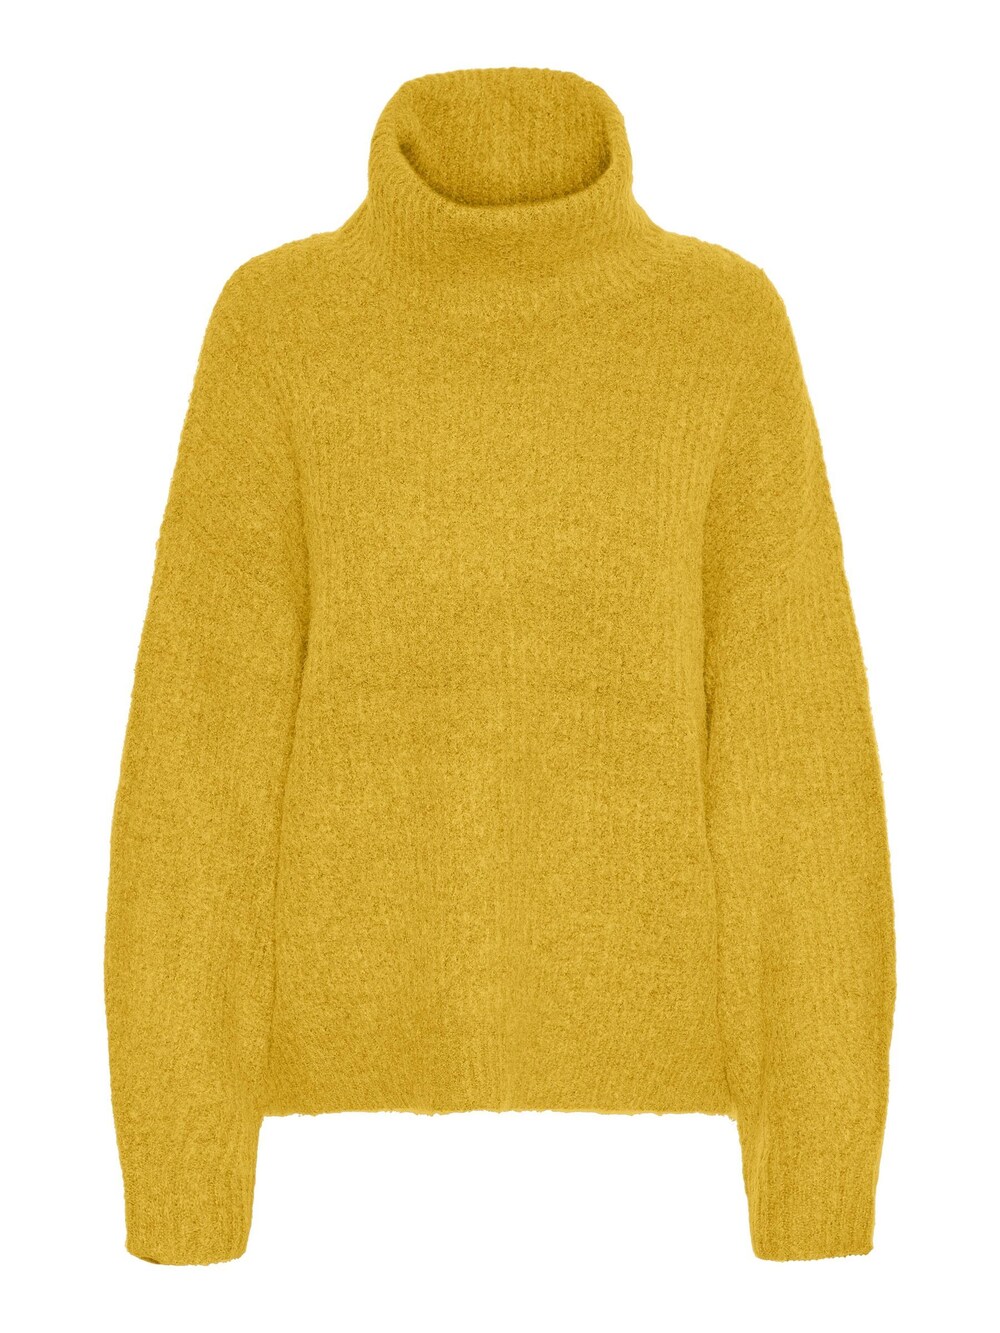 Свитер Vero Moda JULIE, желтый свитер vero moda plaza желтый